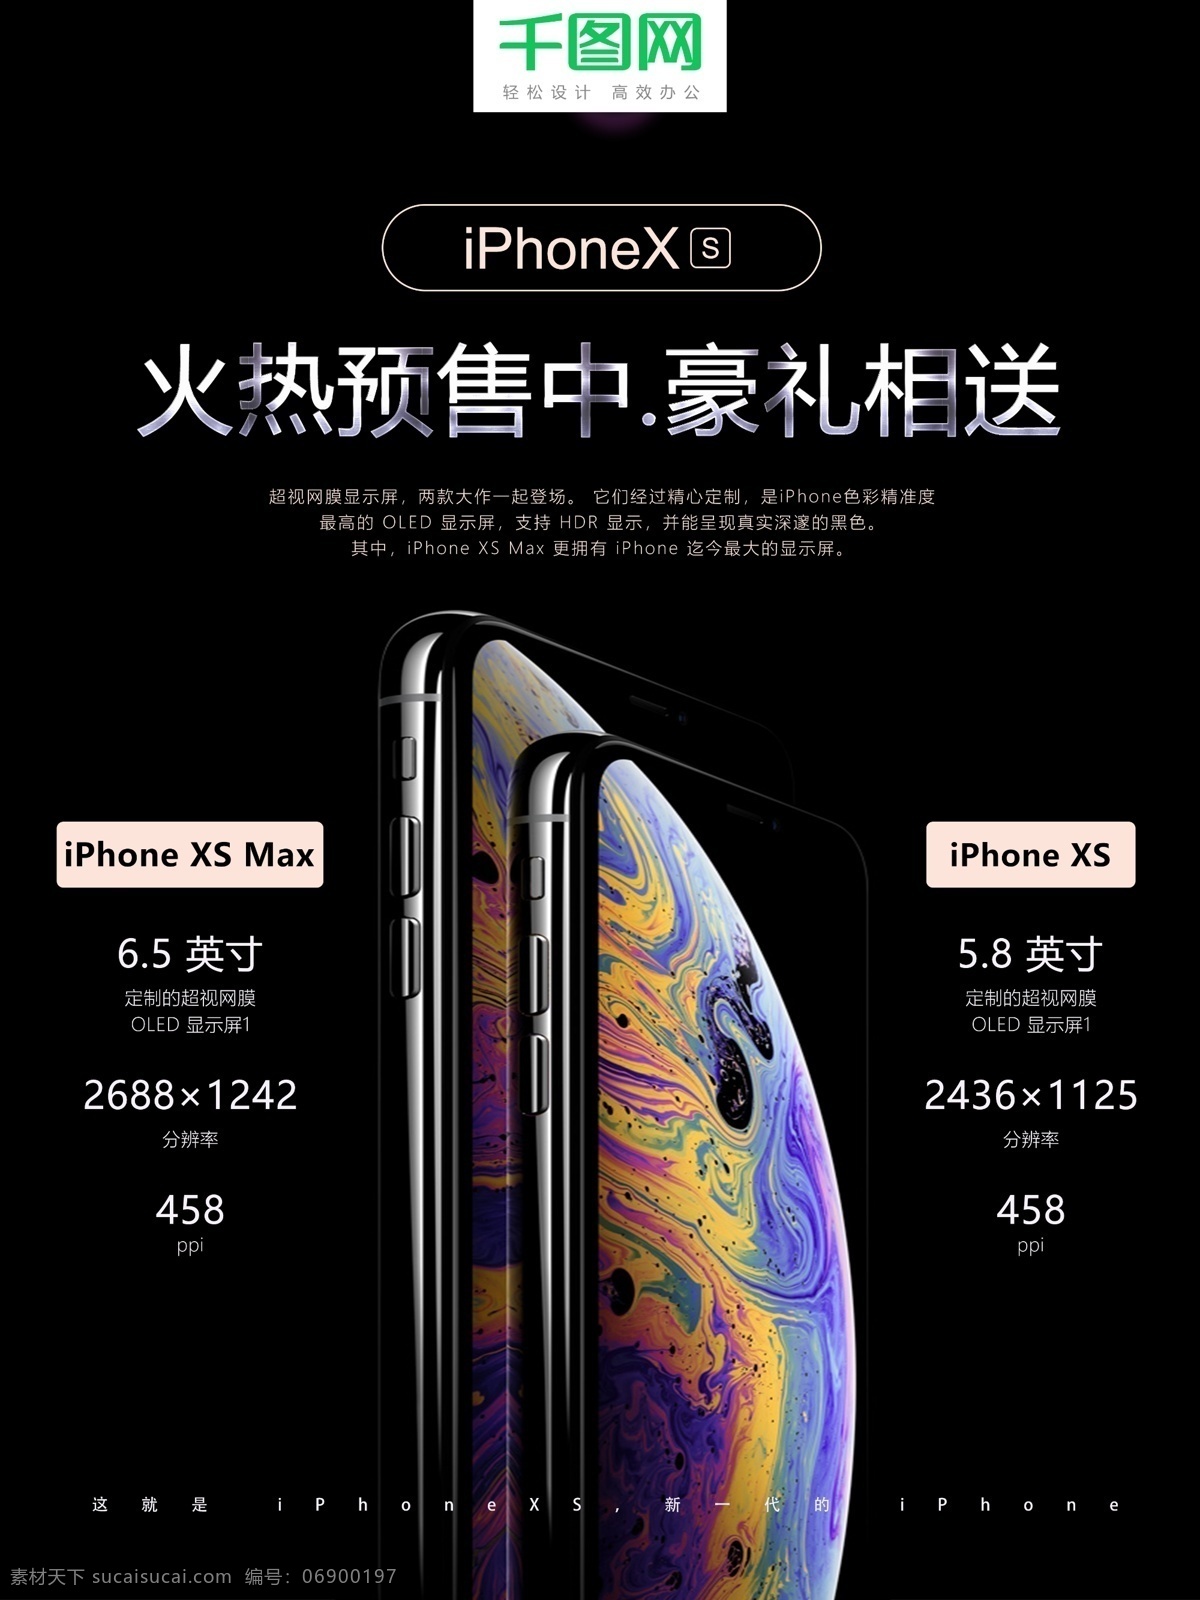 2018 新款 iphonexs 预售 促销 海报 促销海报 苹果手机 预售海报 年 苹果 收